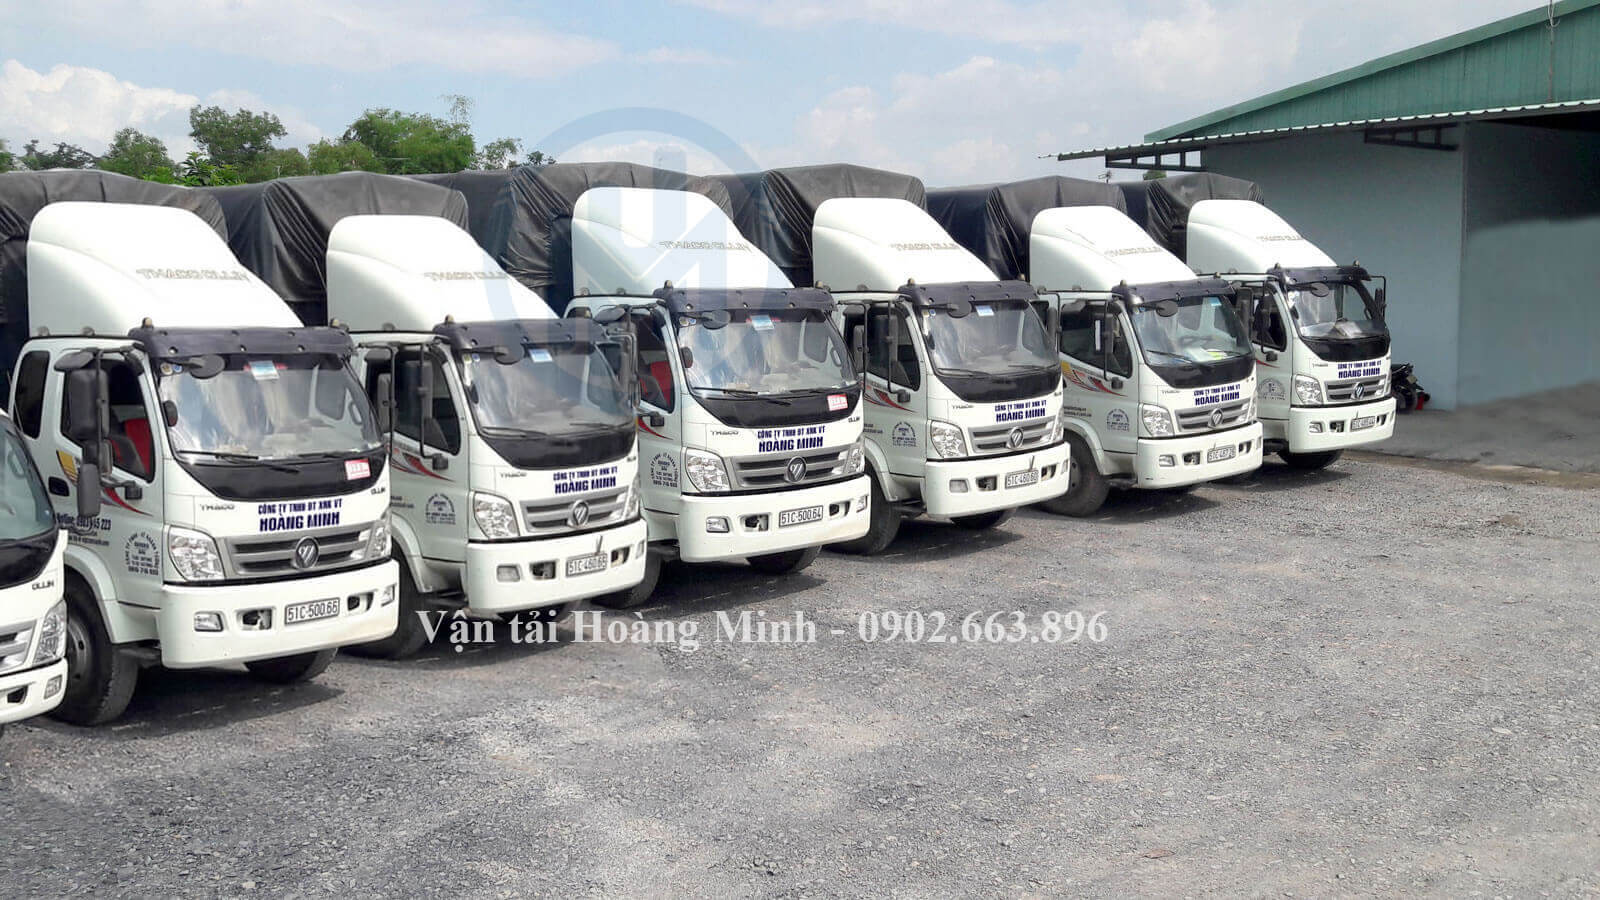 Vận tải Hoàng Minh cung cấp các loại xe tải vận chuyển nào